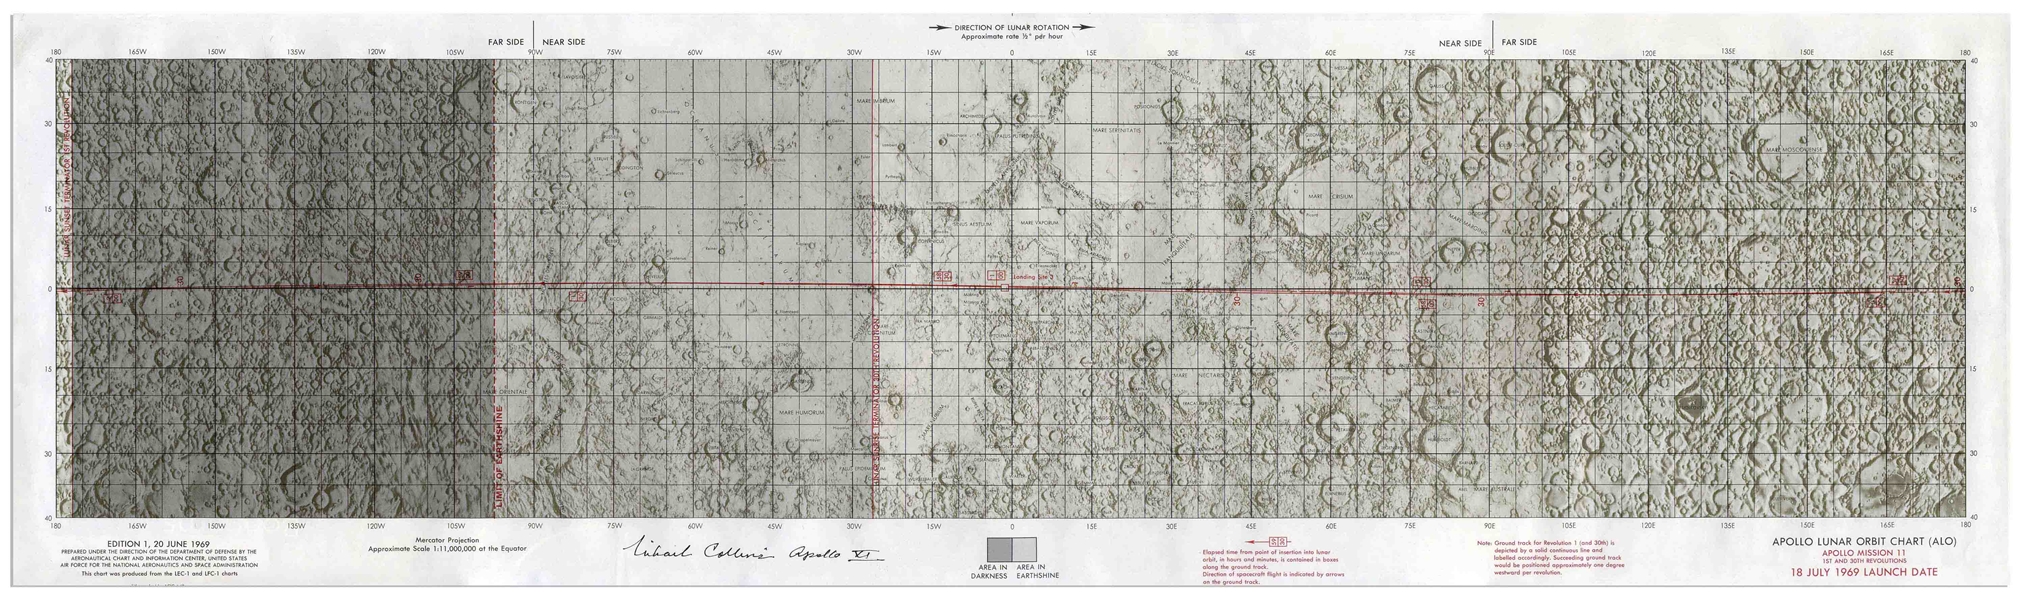 Michael Collins Signed Apollo Lunar Orbit Chart for the Apollo 11 Mission